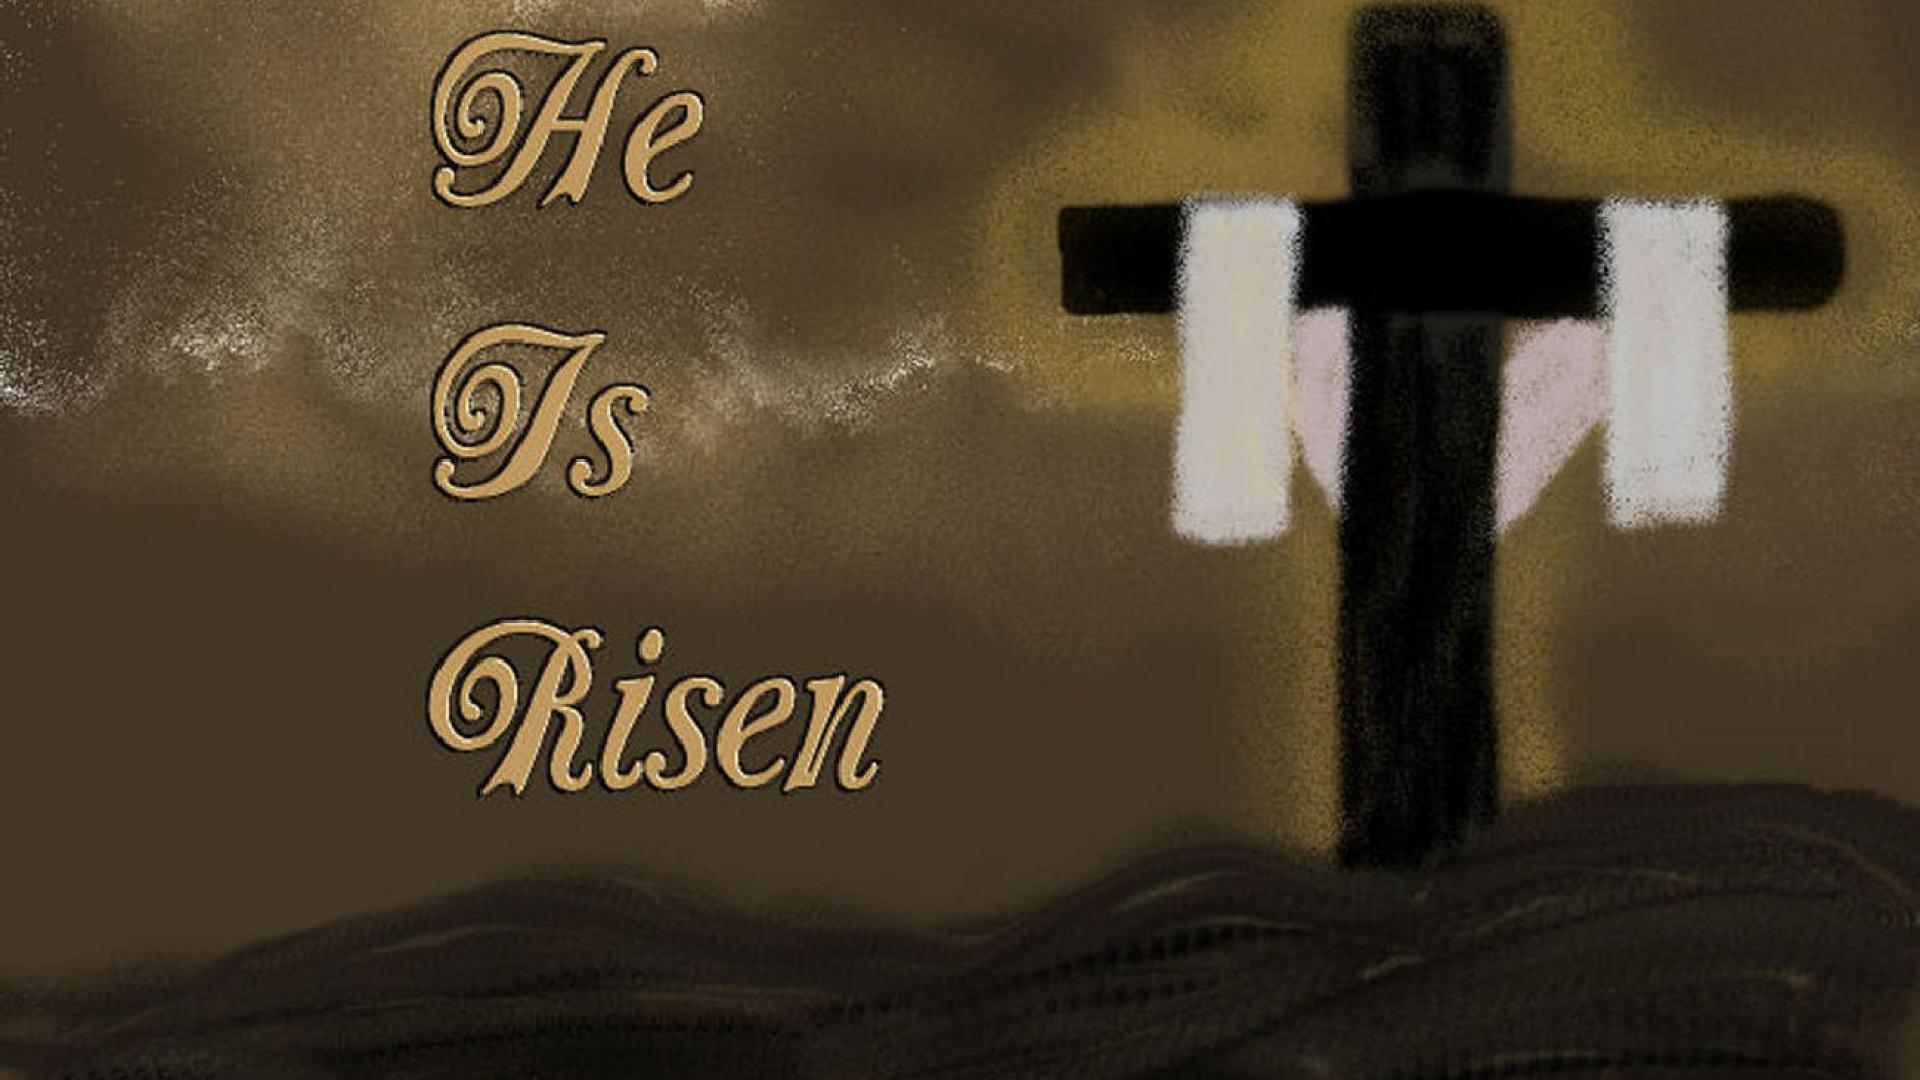 he_risen_easter_holidays_christ_christian_